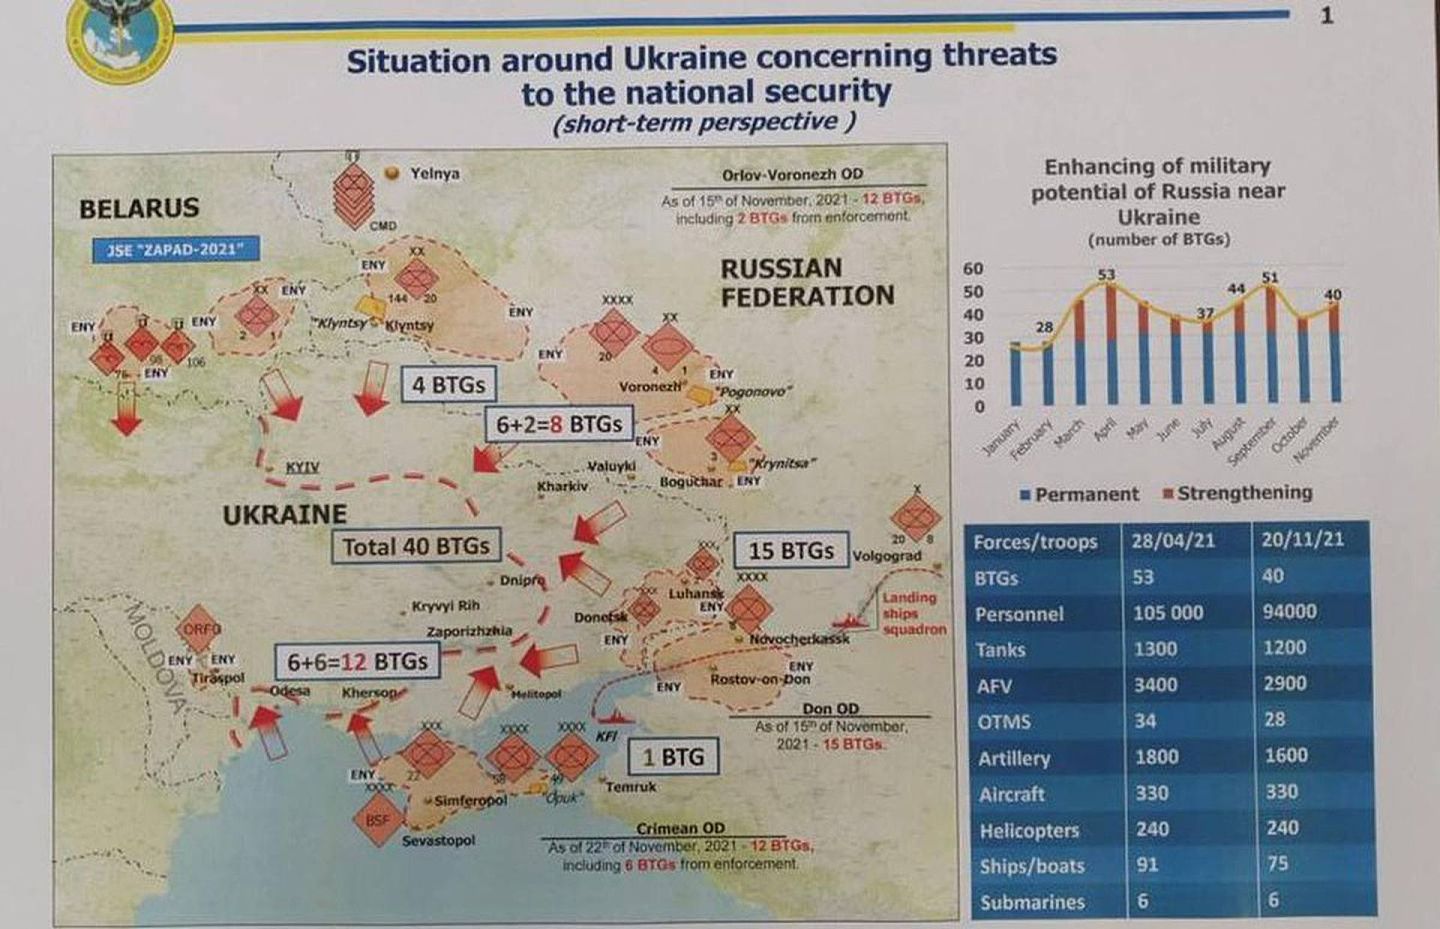 根据乌克兰方面的情报，俄军几乎要对乌克兰展开一场灭国性质的全面打击。其出兵方向甚至包括白俄罗斯。而今，检验情报真伪的时候到了。（liveumap网页截图）